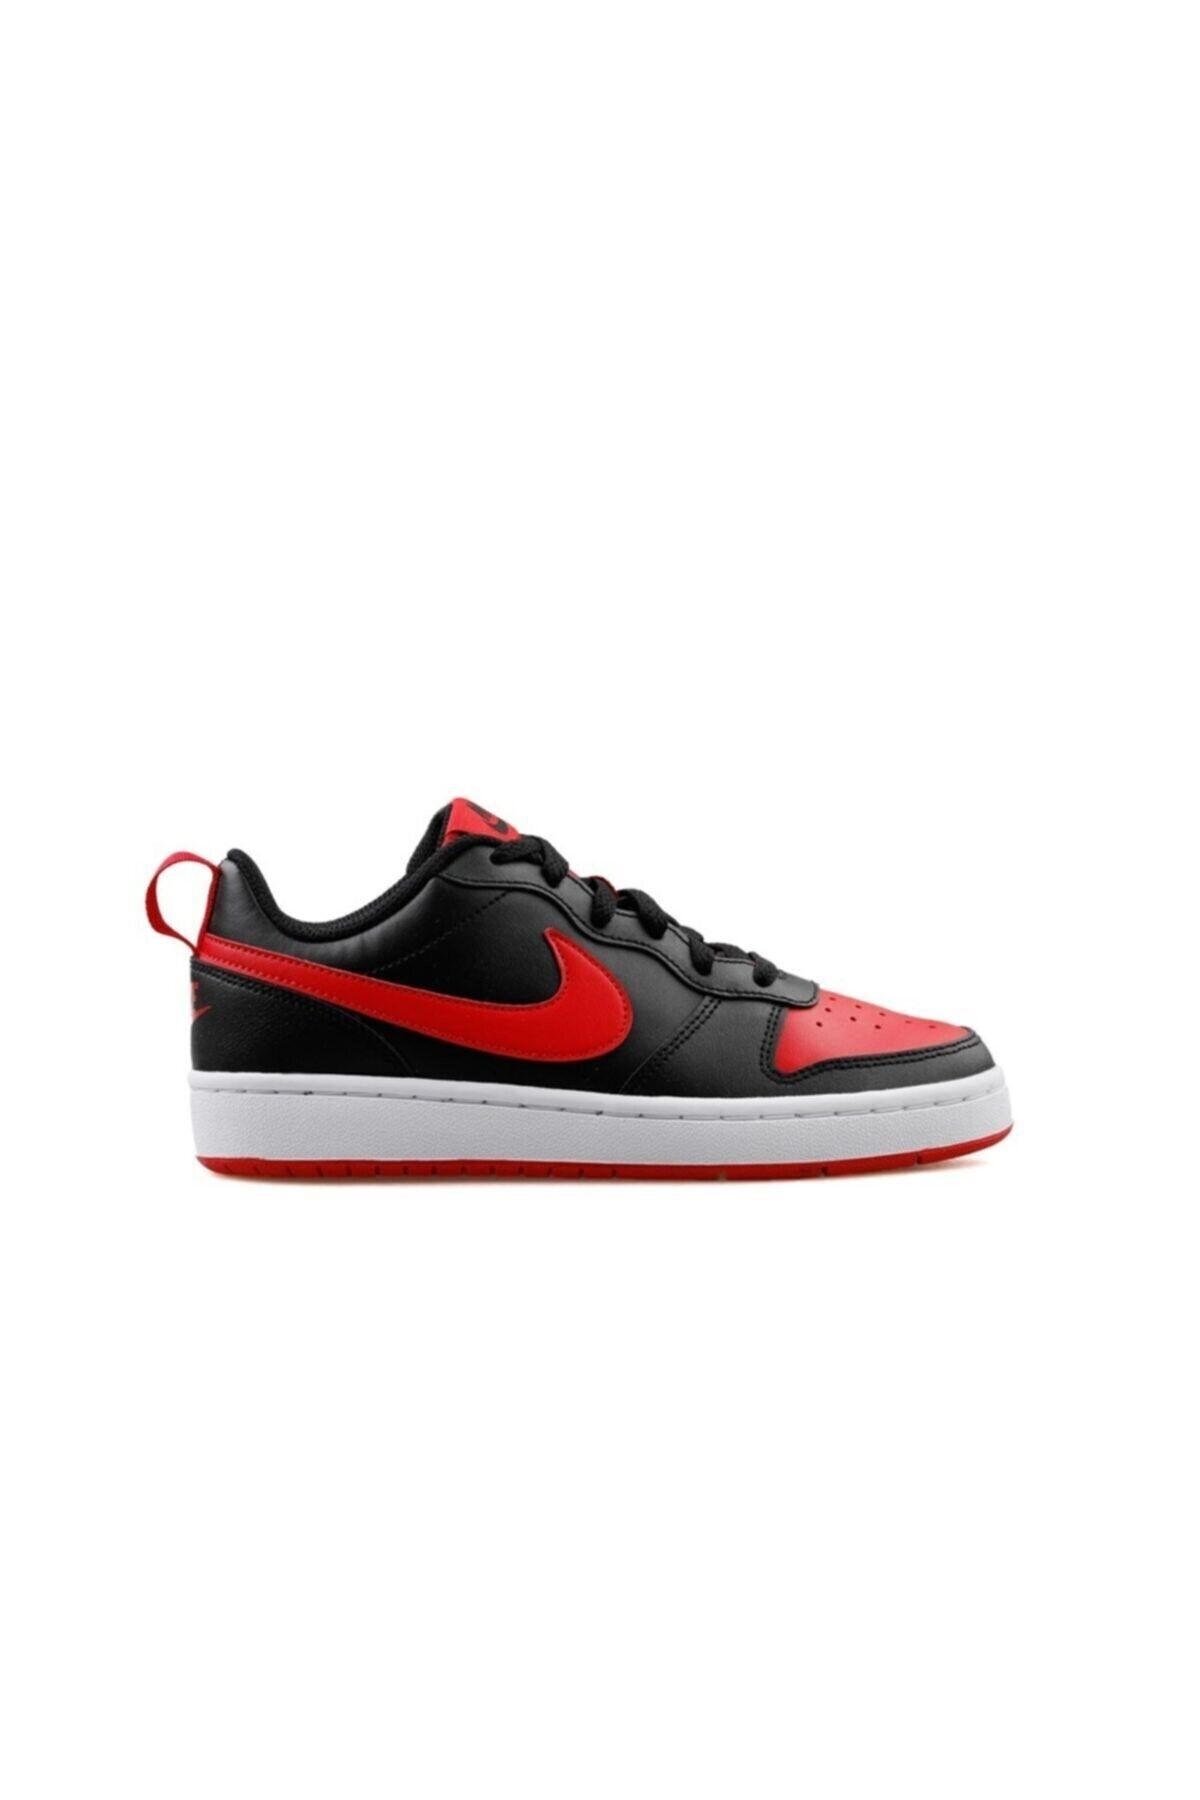 Nike Court Borough Low 2 (GS) Kadın Günlük Spor Ayakkabı Bq5448-007-siyah-krmz